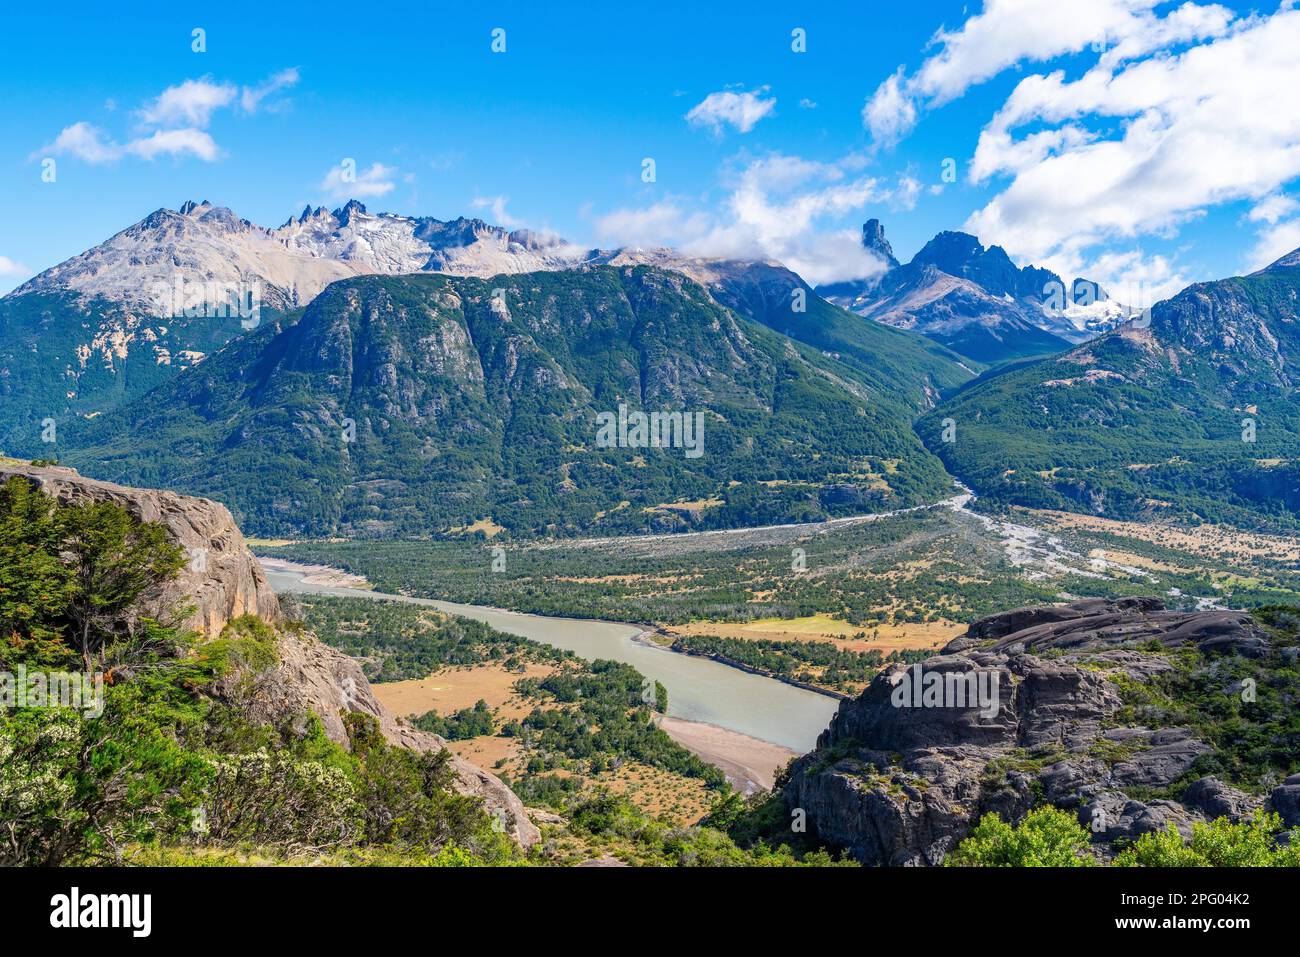 Vallée du Rio Ibanez et montagnes dans le Parc National Cerro Castillo, Carretera Austral, Aysen, Patagonie, Chili Banque D'Images